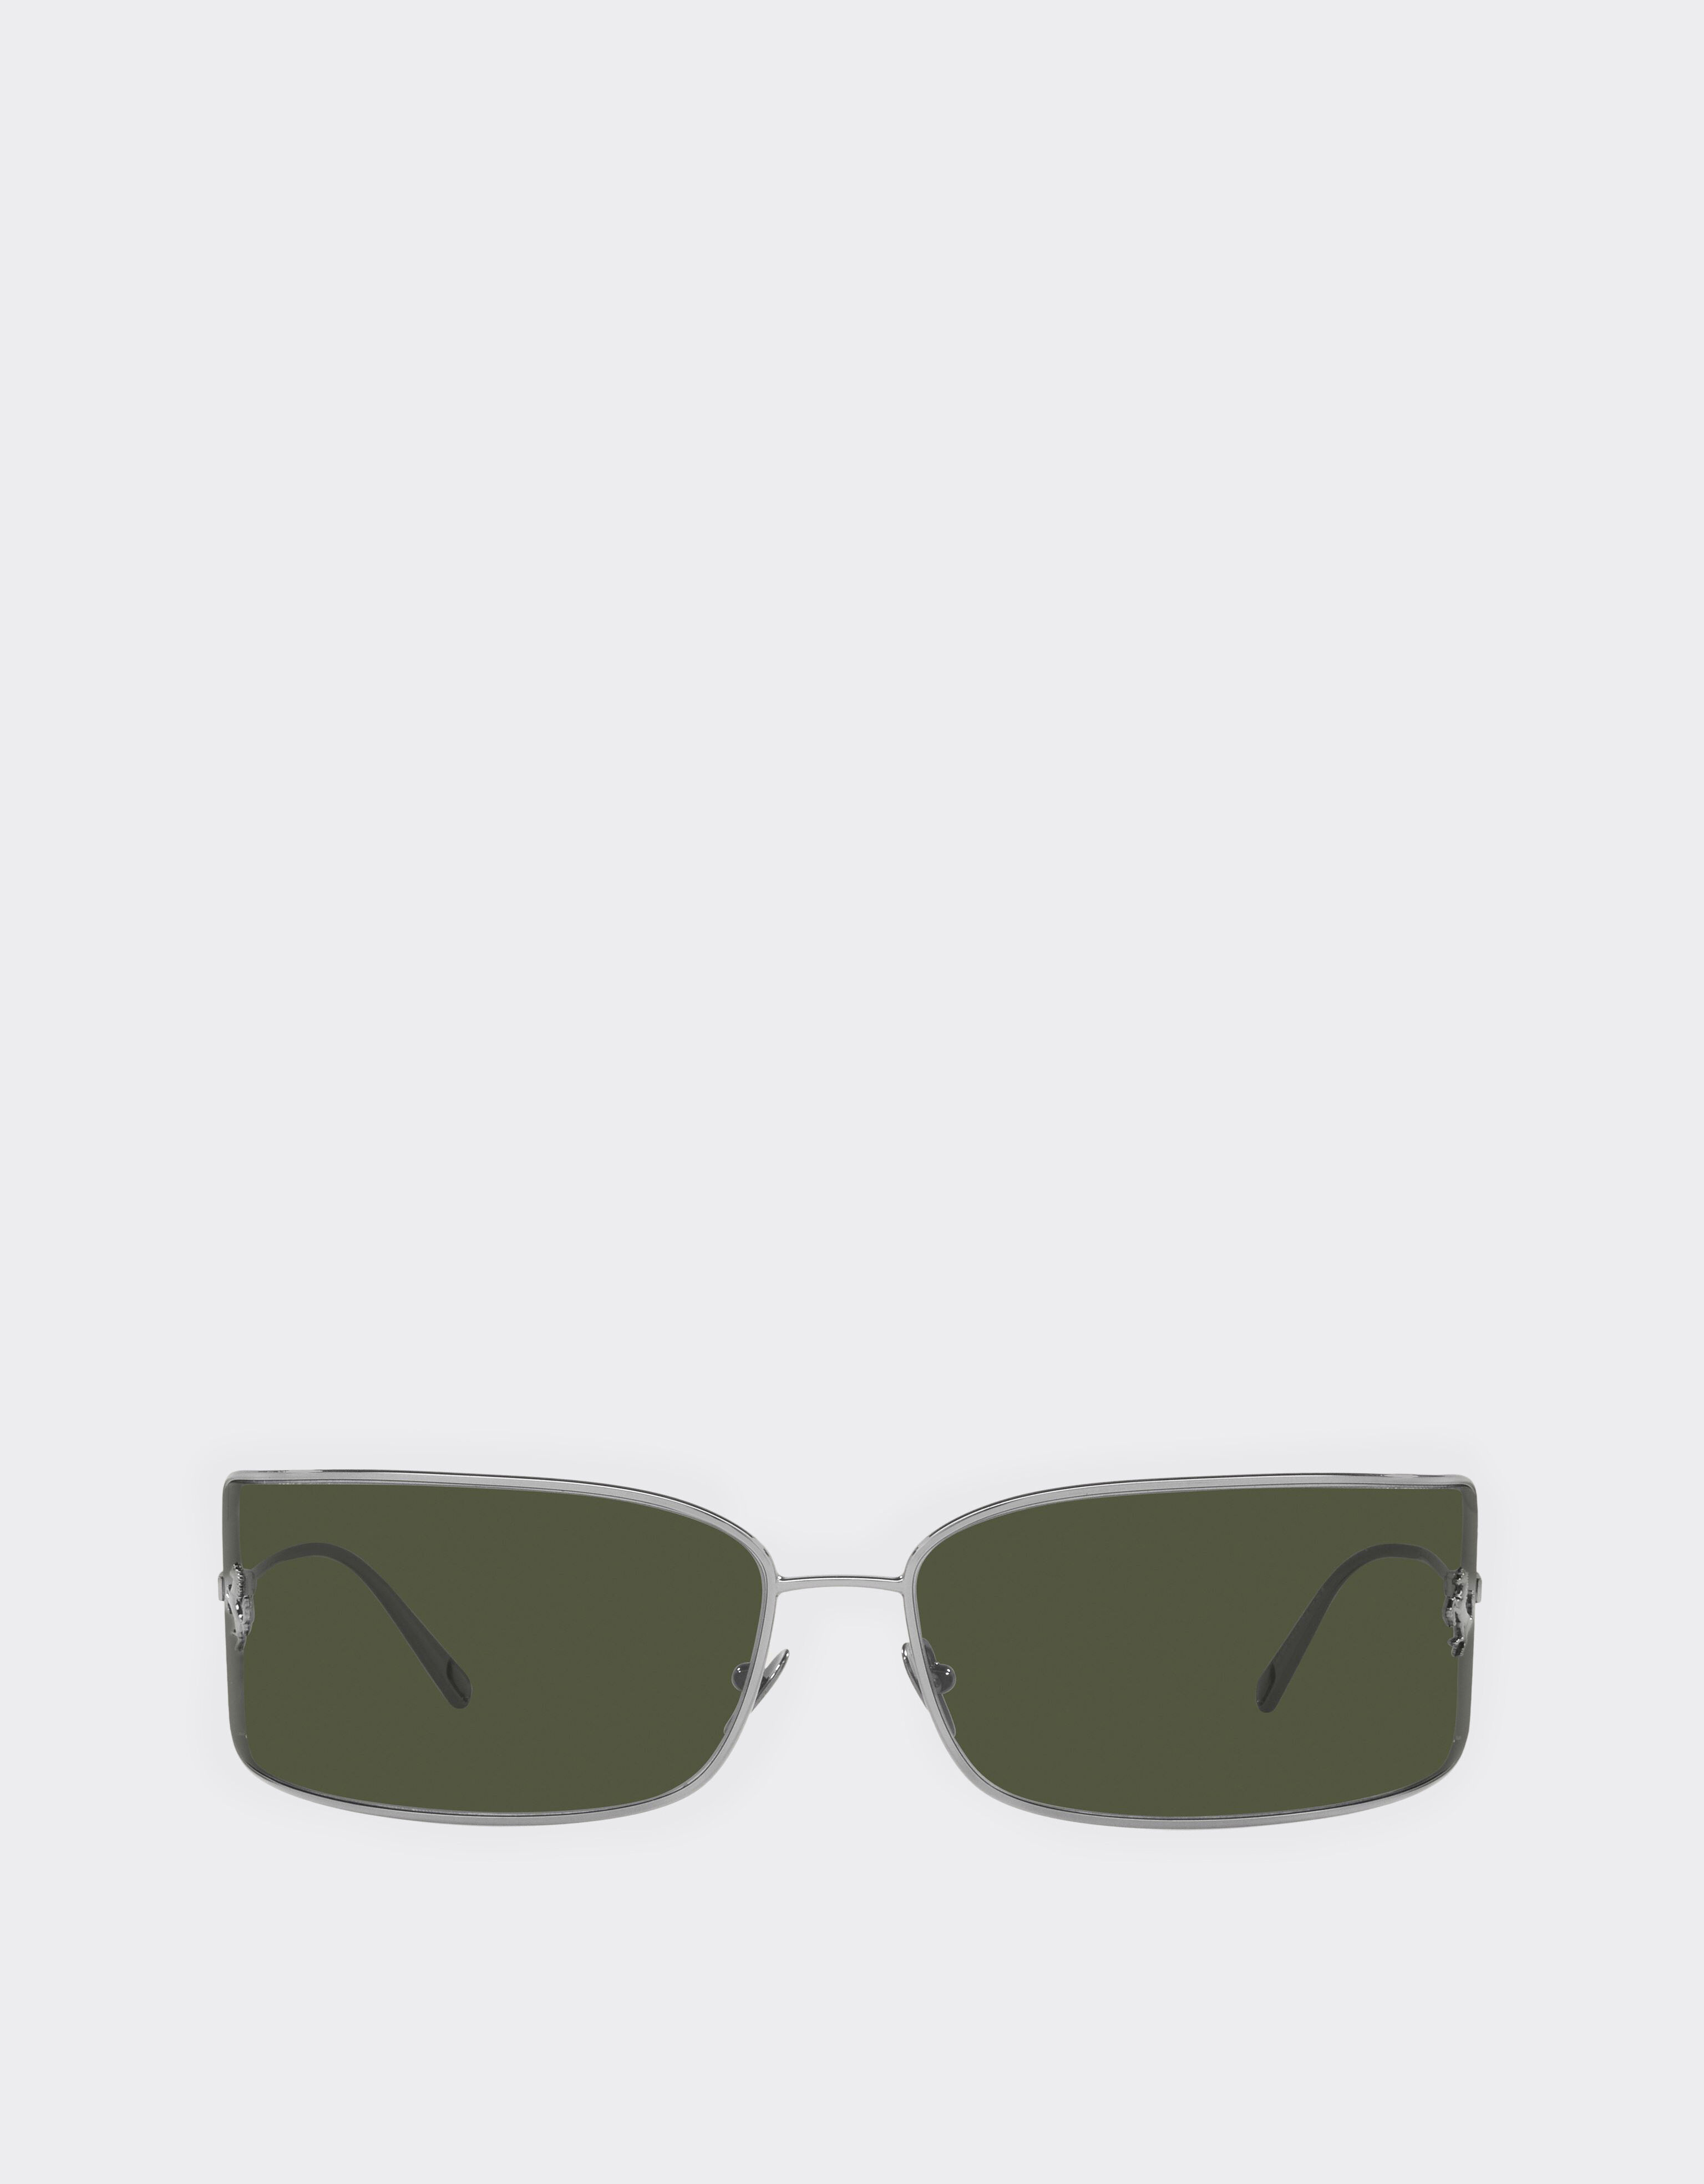 ${brand} Ferrari shield sunglasses with green lenses ${colorDescription} ${masterID}